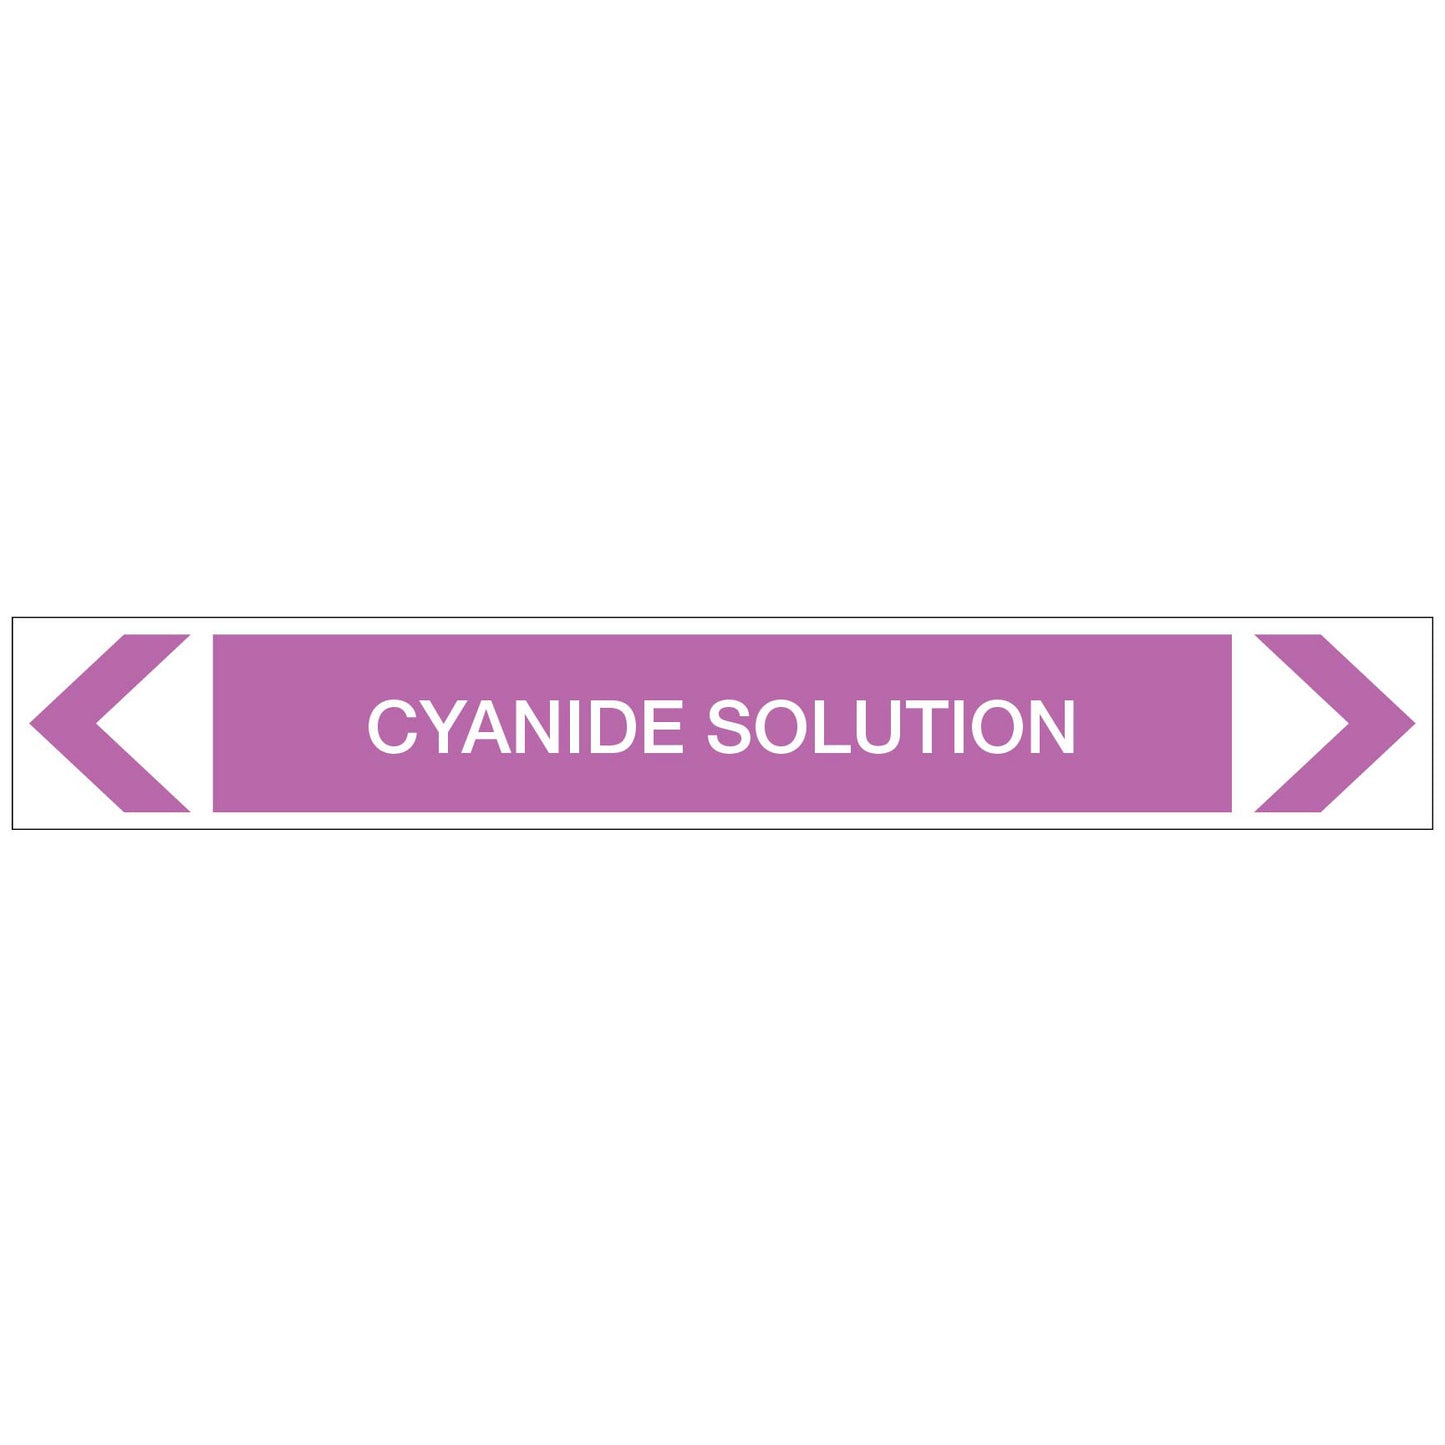 Alkalis / Acids - Cyanide Solution - Pipe Marker Sticker